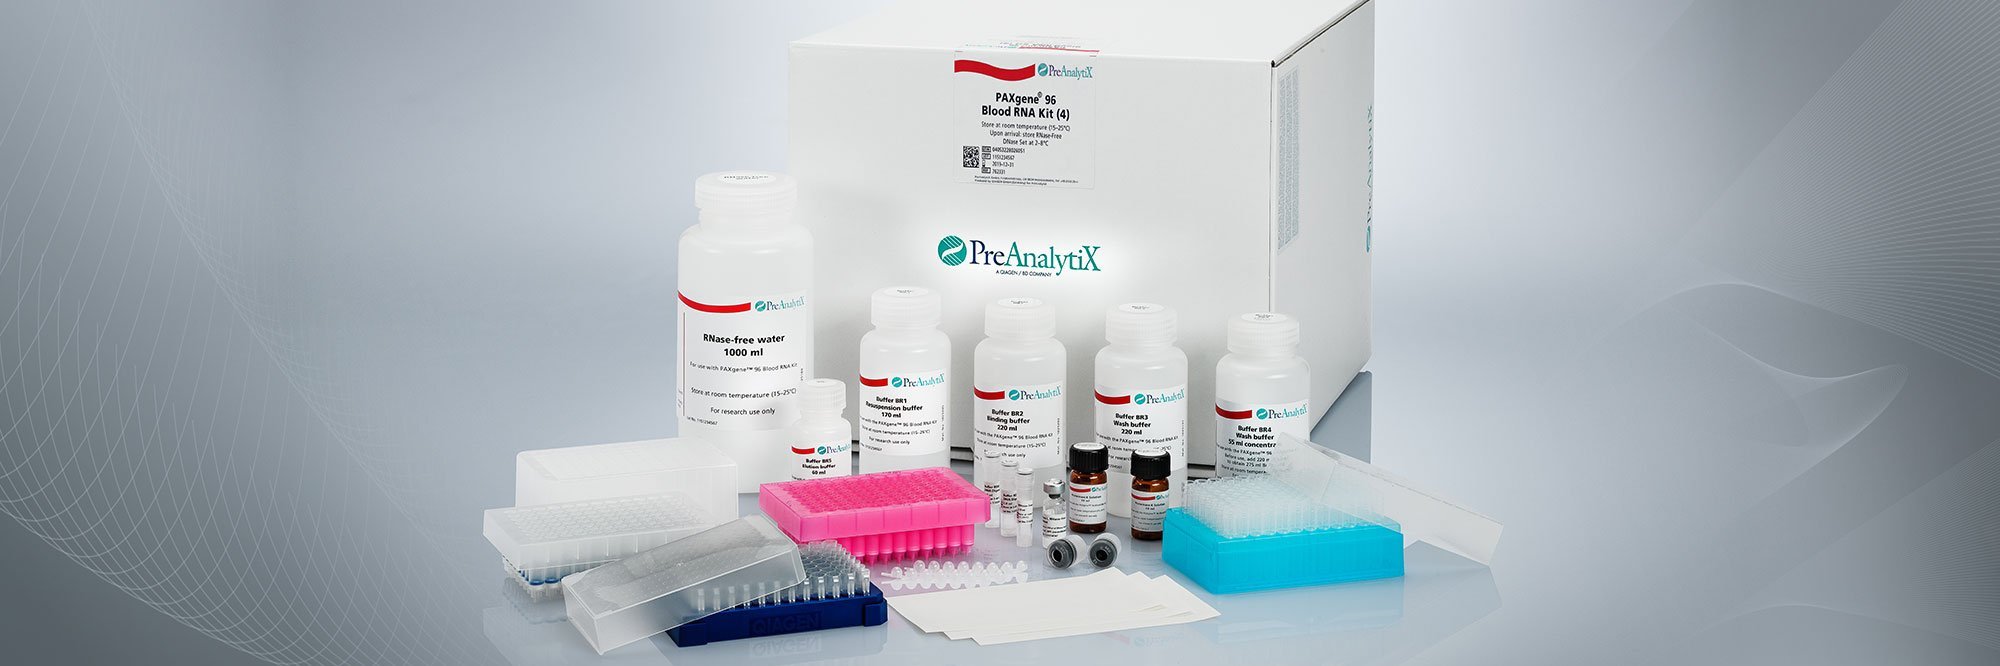 Image of PAXgene 96 Blood RNA Kit (762331)